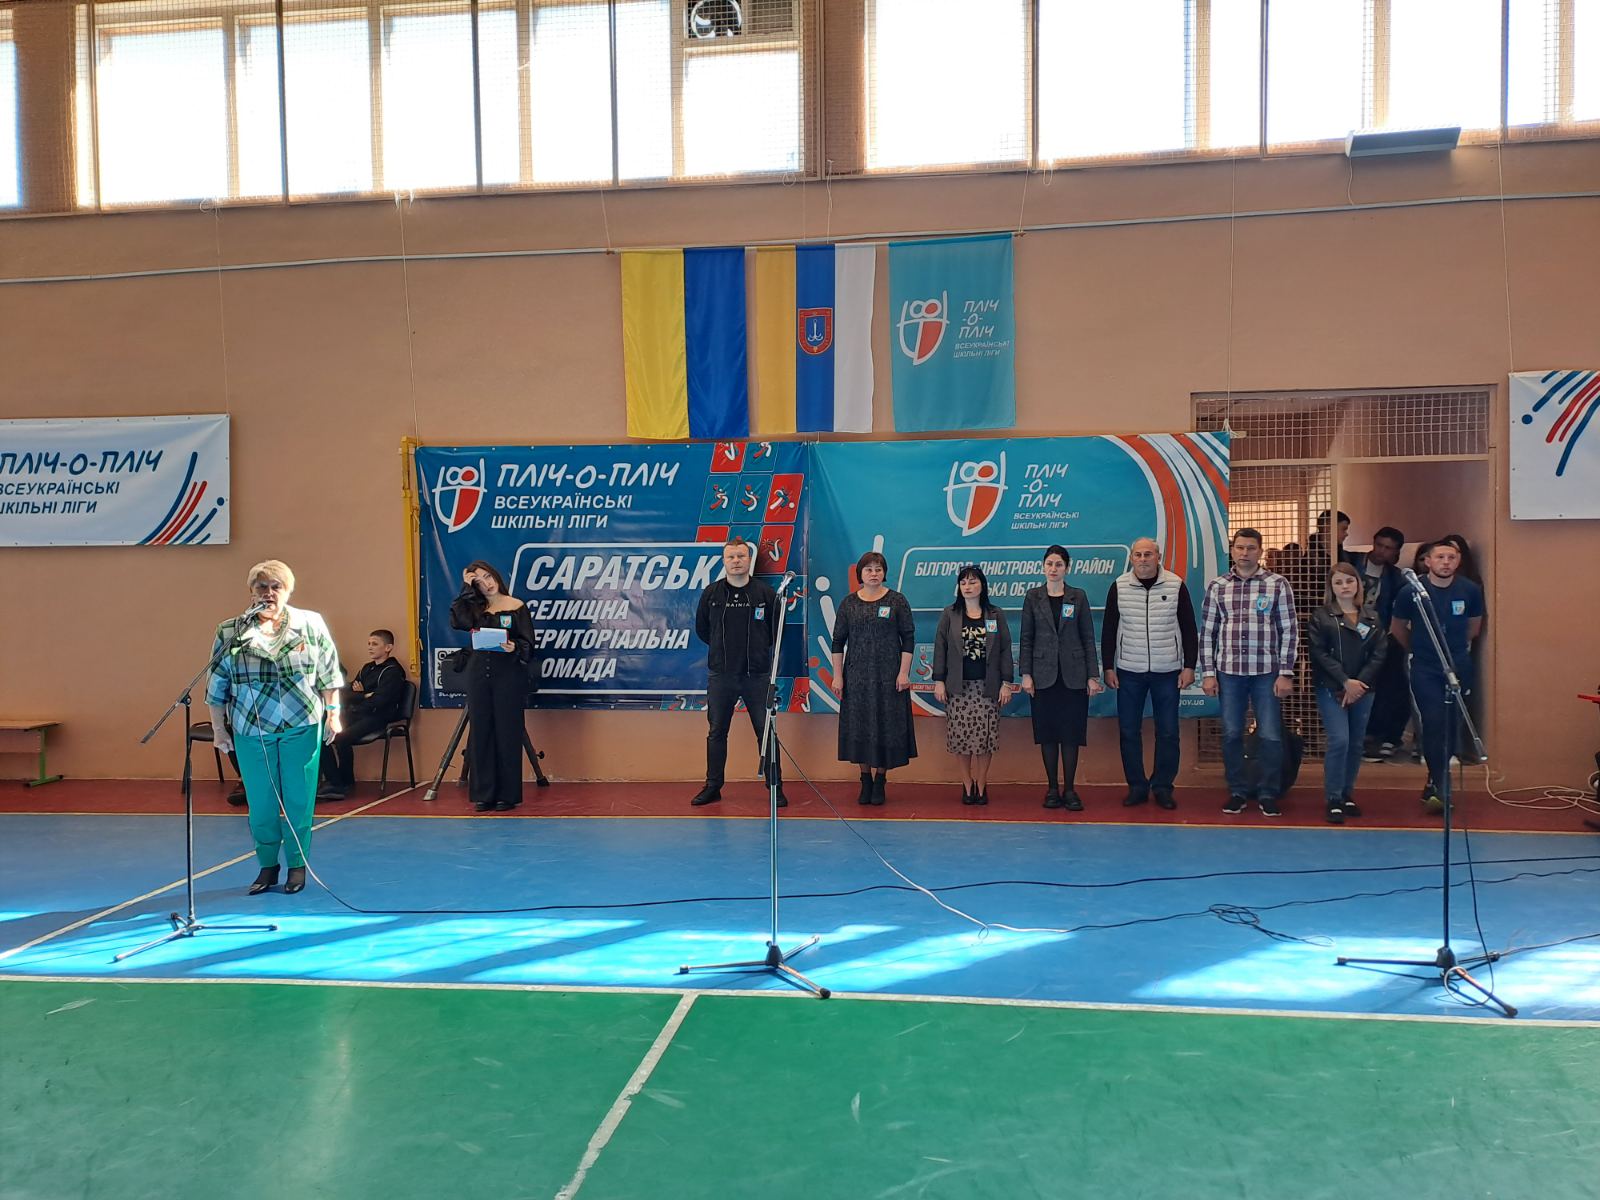 Днями у Саратській громаді відбувся ІІІ зональний районний етап спортивних змагань «Пліч-о-пліч. Всеукраїнські шкільні ліги» з баскетболу серед хлопців